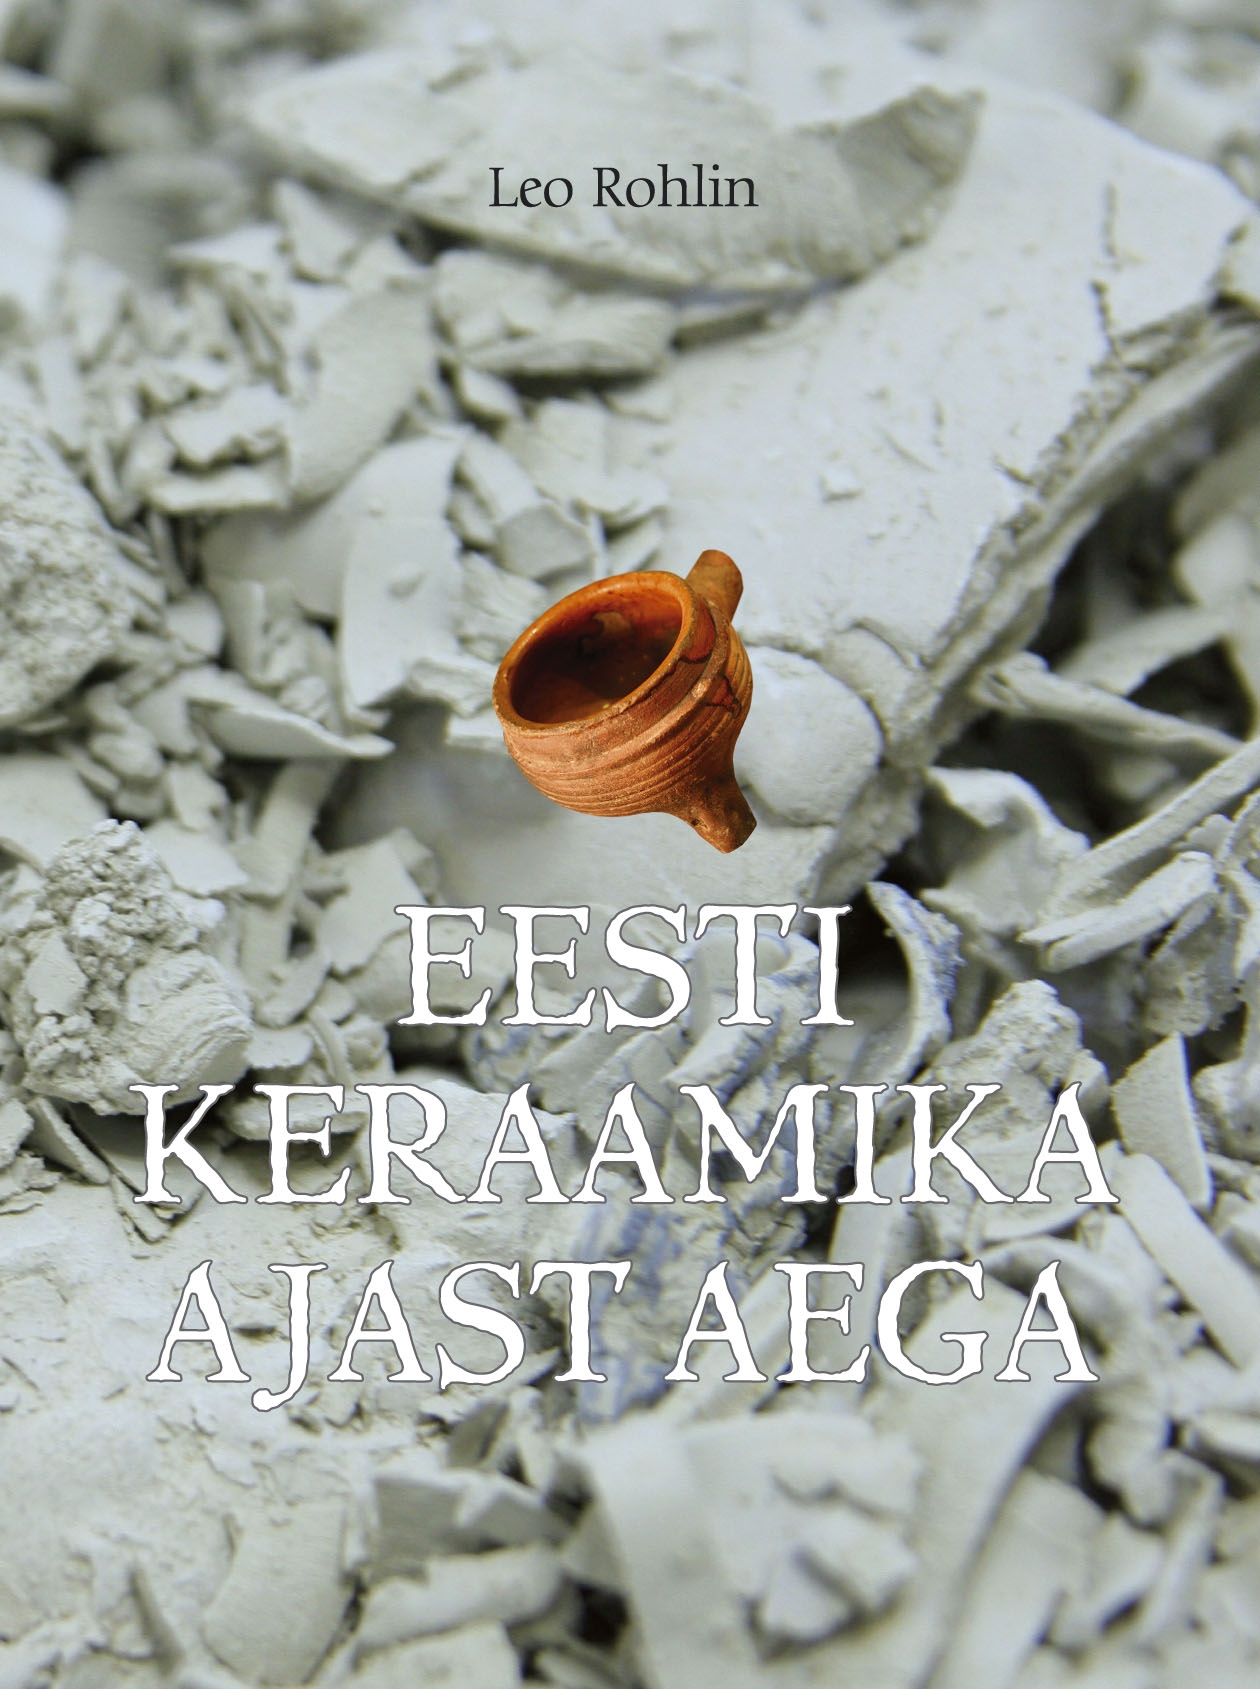 2007.Eesti.keraamika.ajast.aega